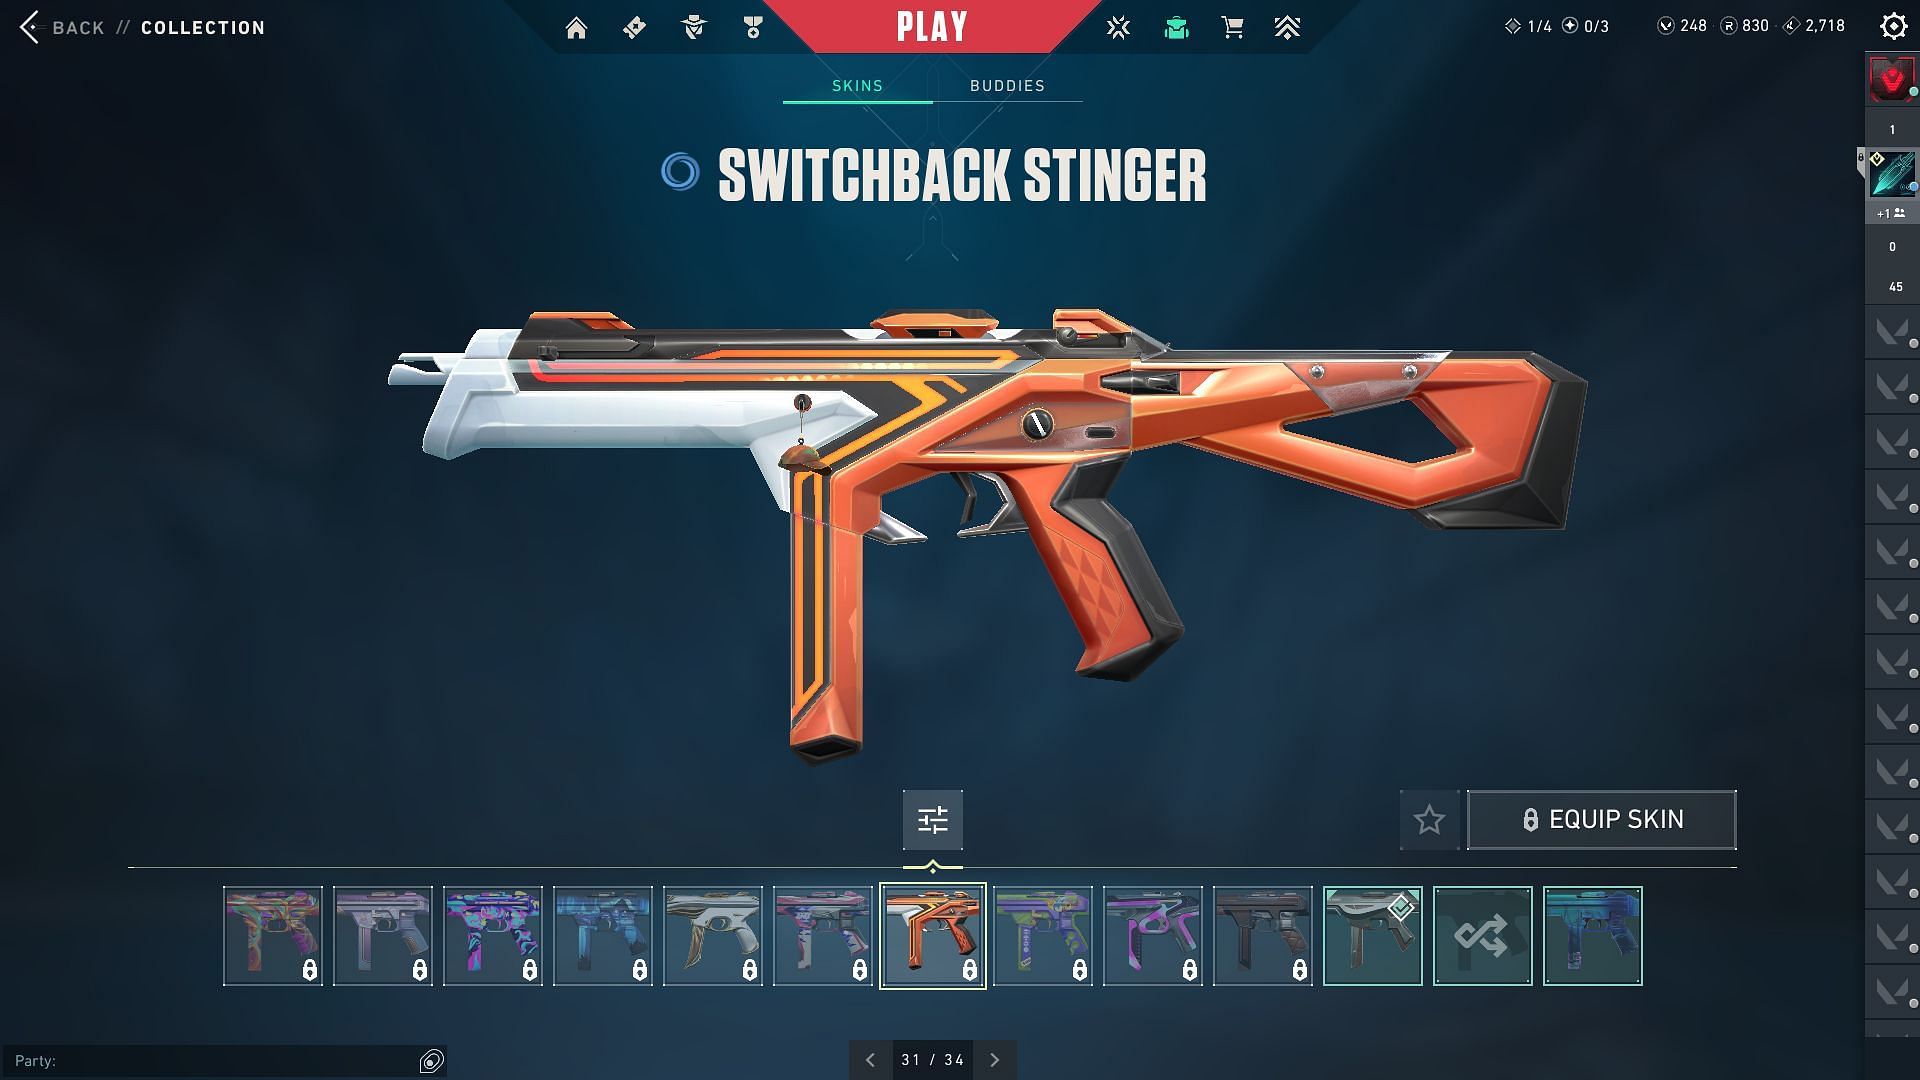 Switchback Stinger (Image via Riot Games)